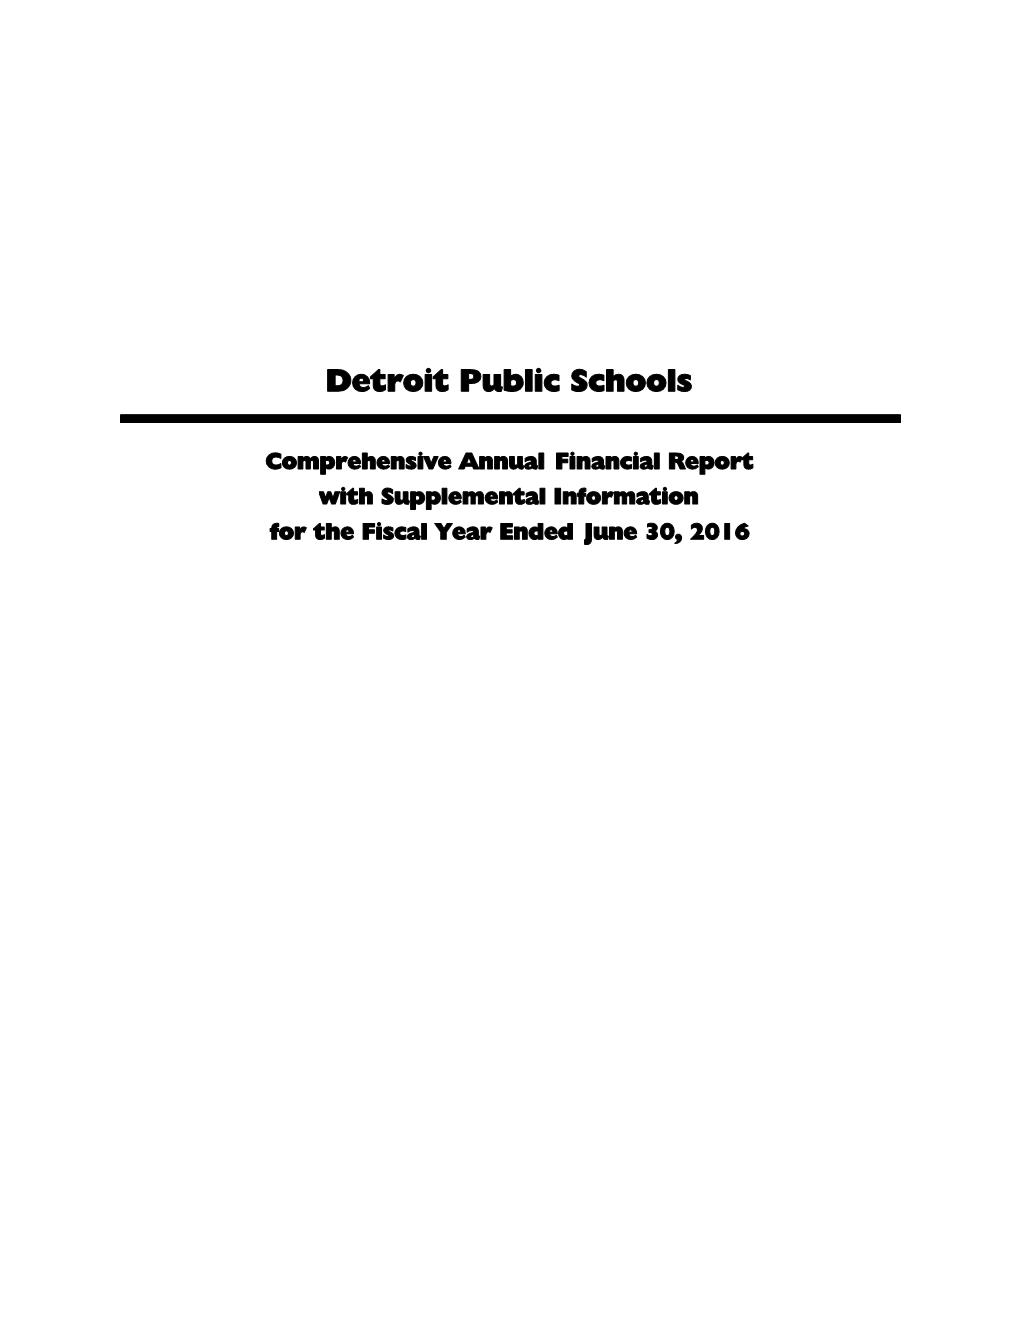 Detroit Public Schools-0616-AUDFT.Cvw